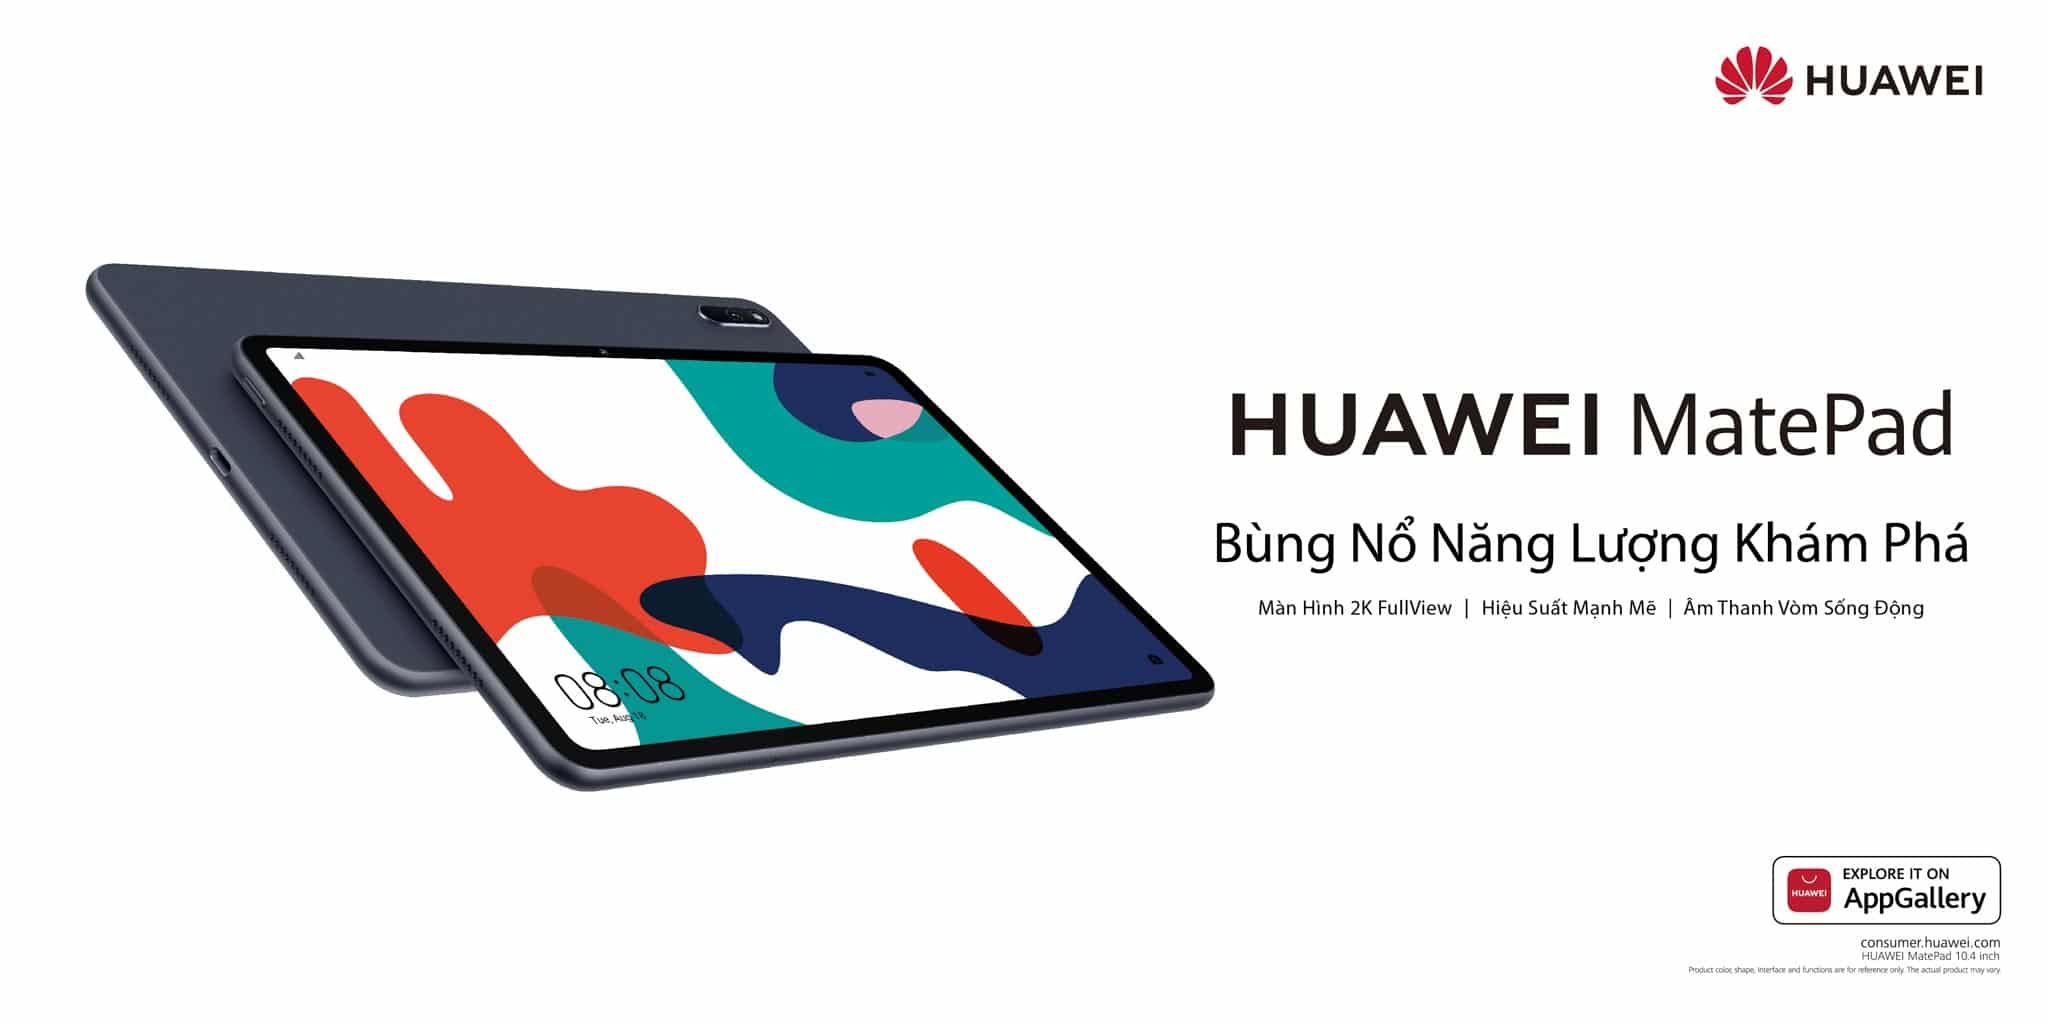 Huawei giới thiệu bộ đôi máy tính bảng MatePad và MatePad T10s tại Việt Nam, bán độc quyền tại Thế Giới Di Động